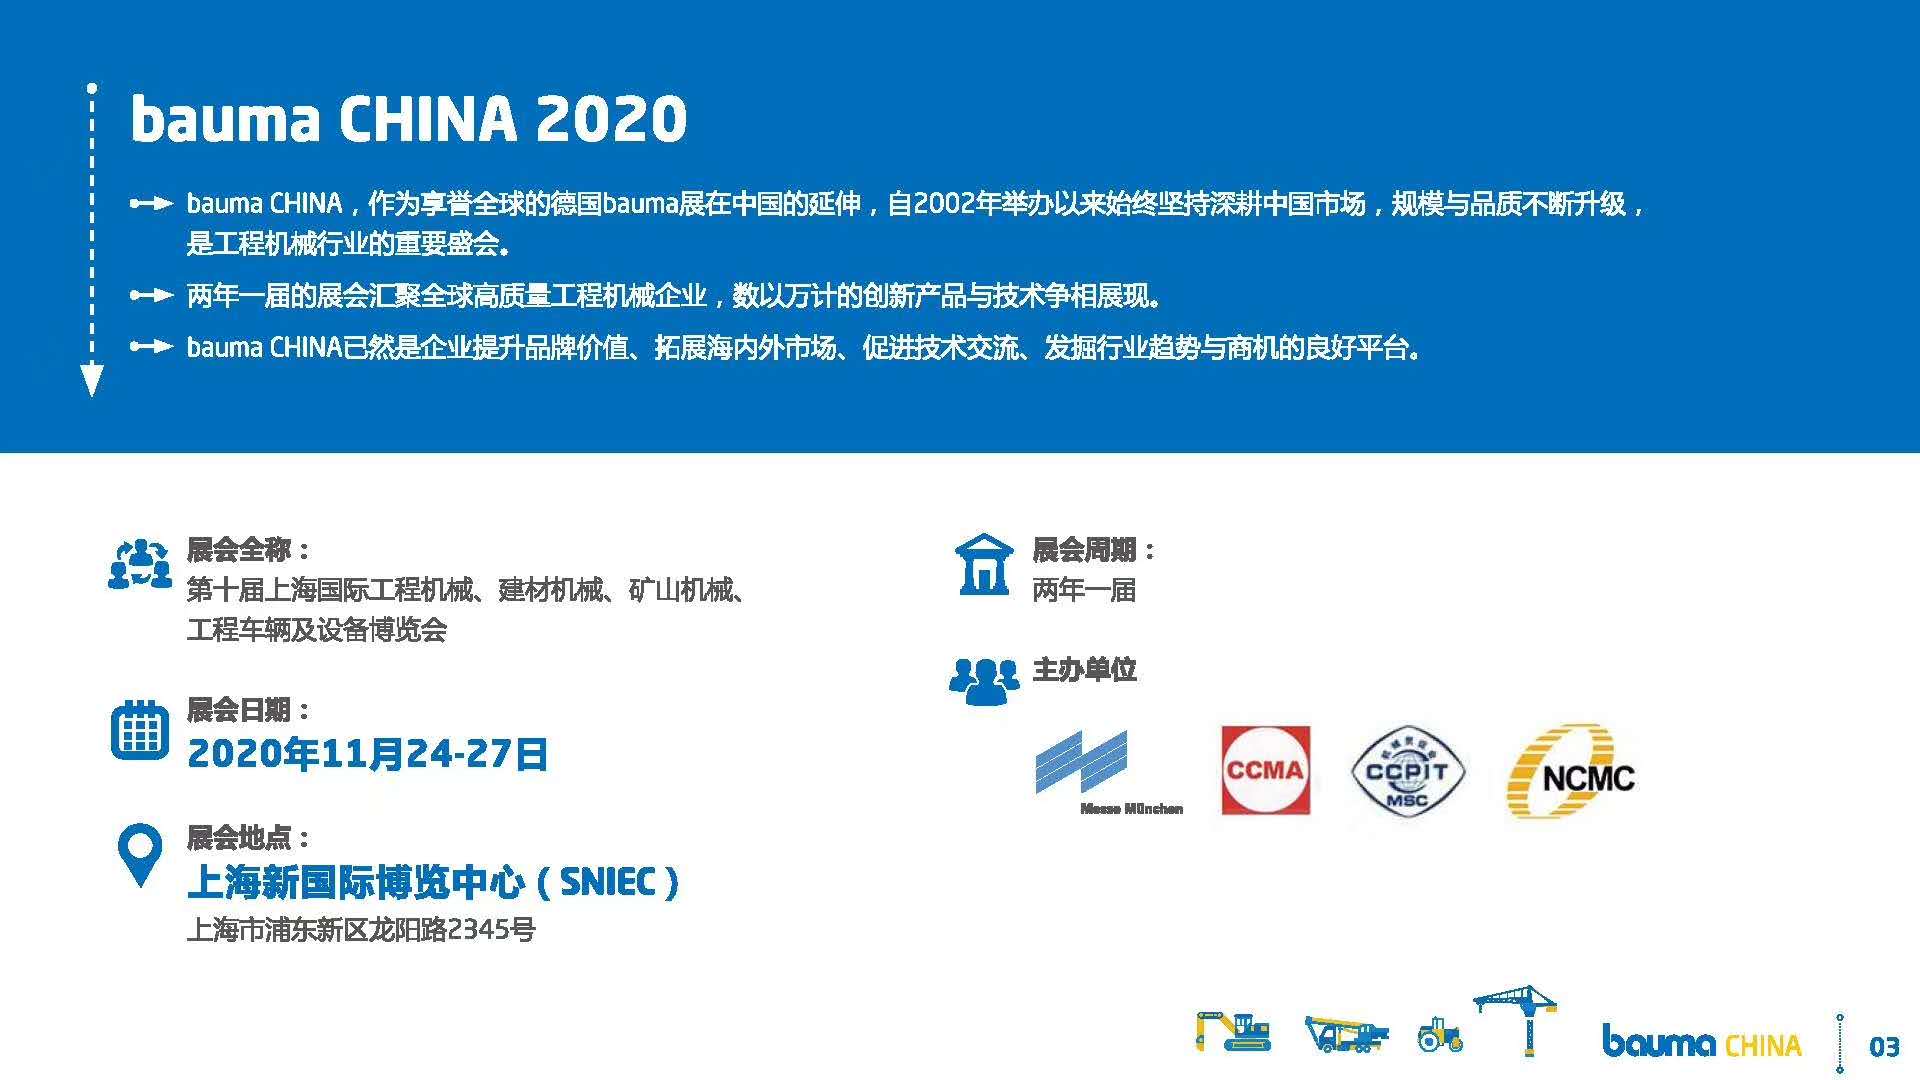 2020 bauma CHINA